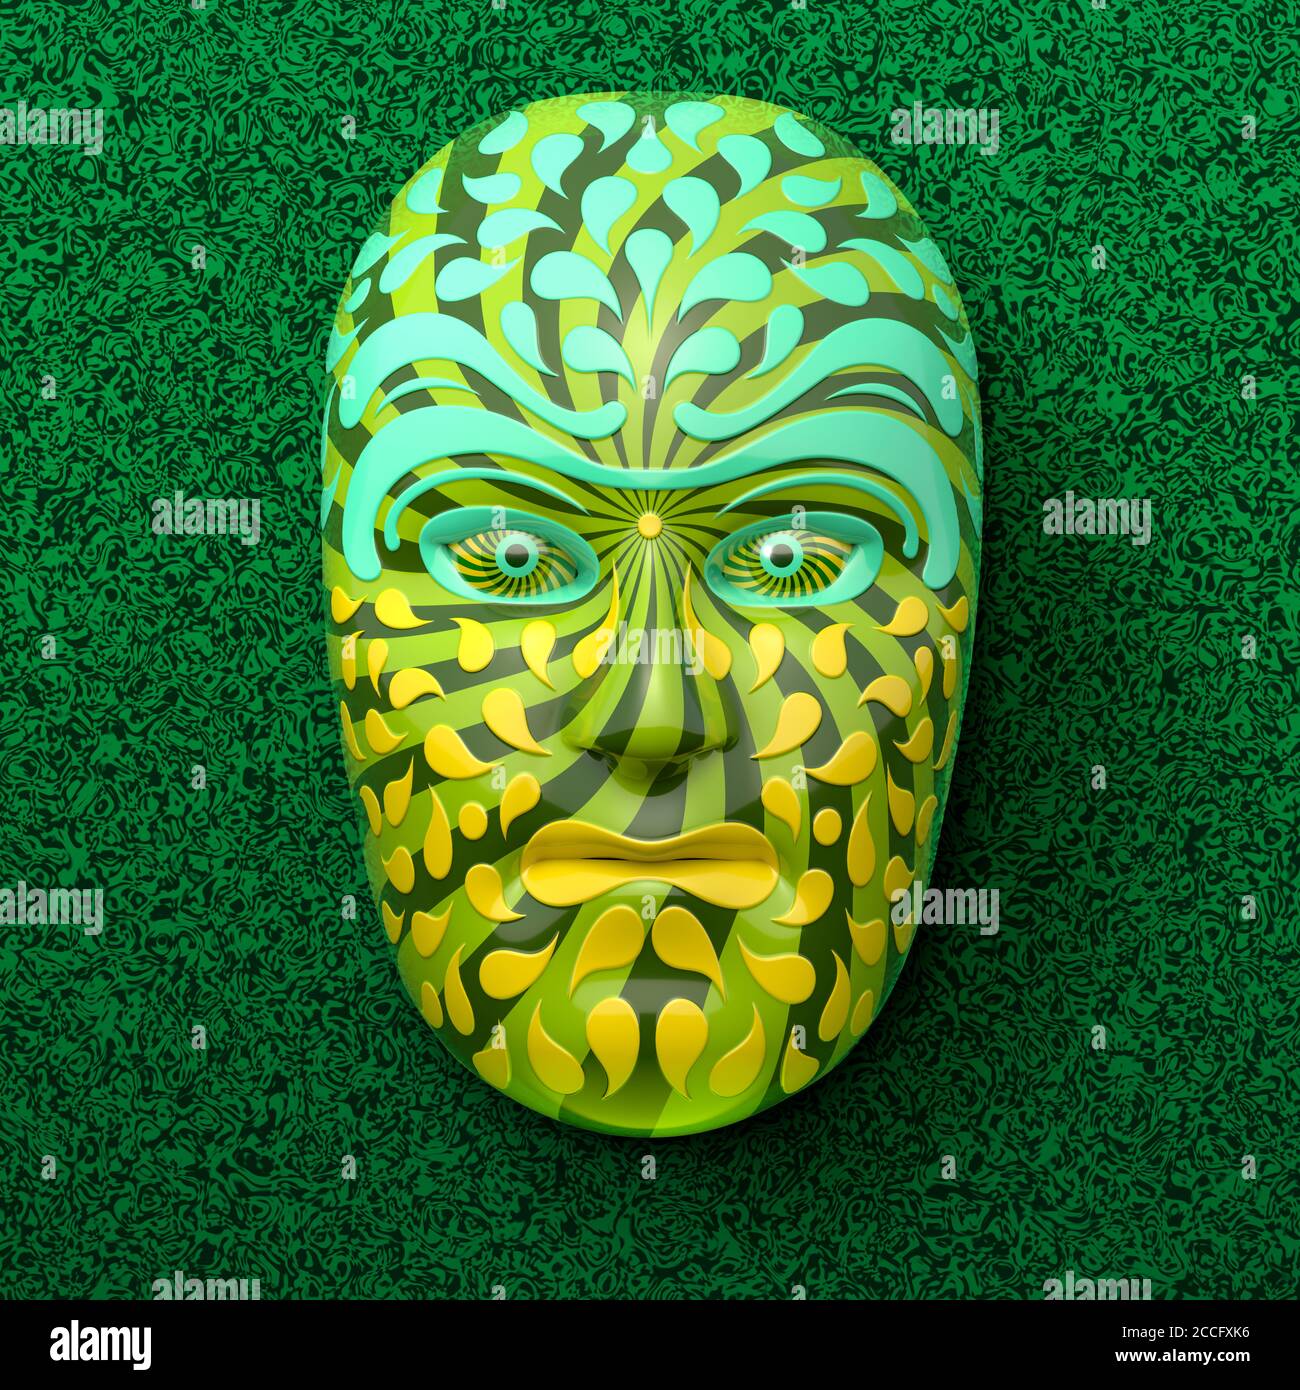 Asiatische Theatermaske mit farbigen Ornamenten in grün gegen ein Dunkelgrüner marmorter Hintergrund Stockfoto